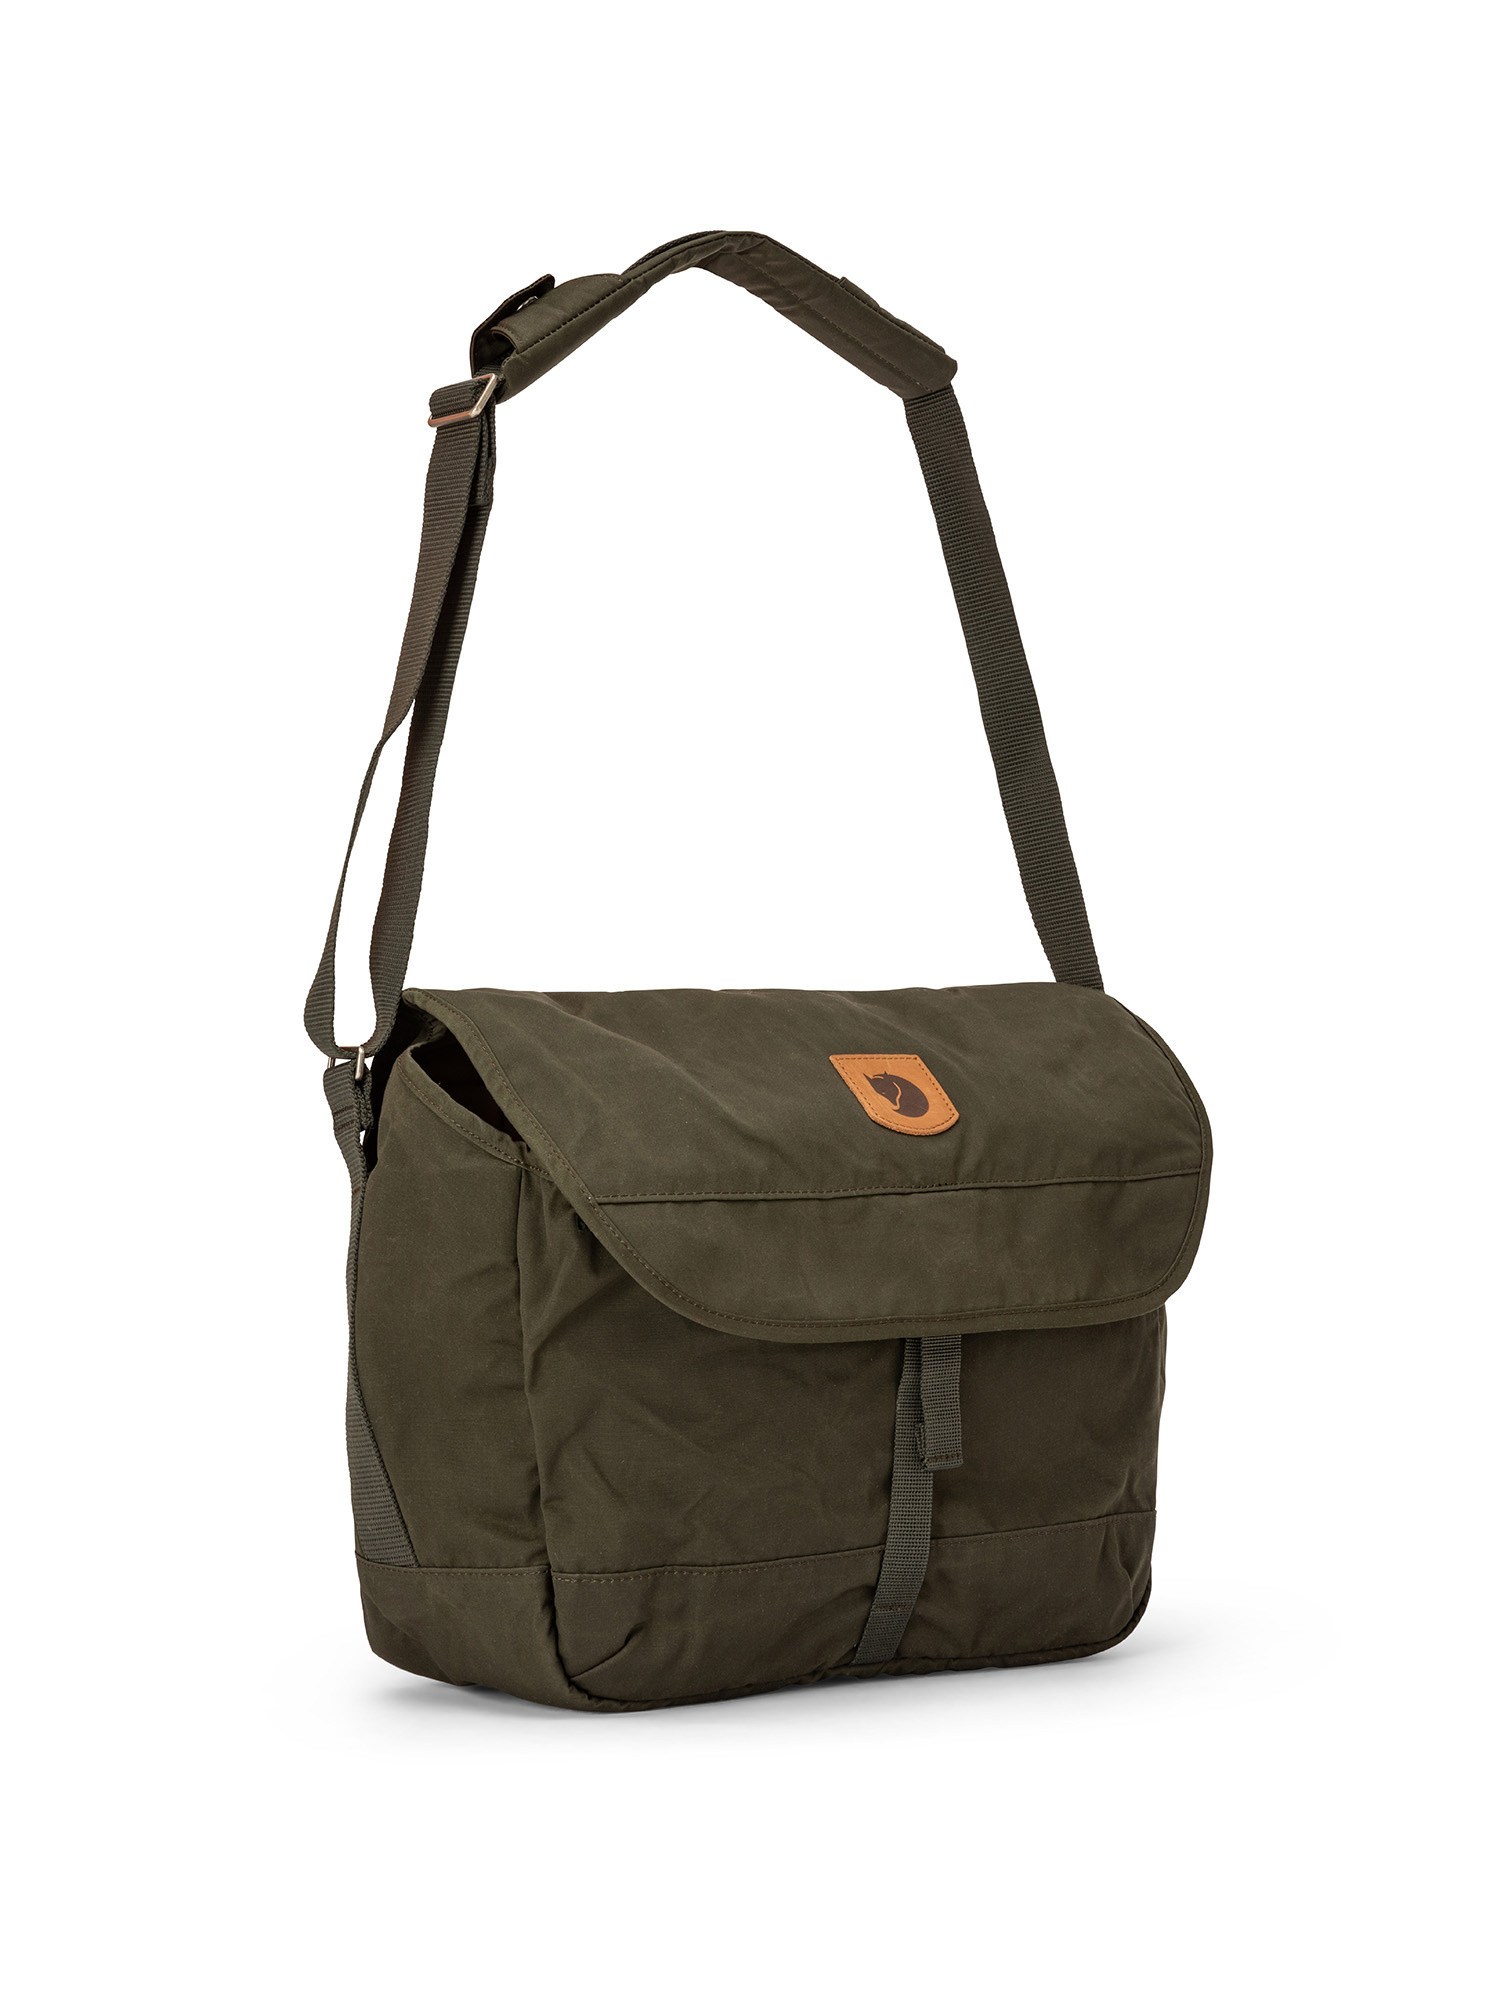 School-bag, Green, large image number 1